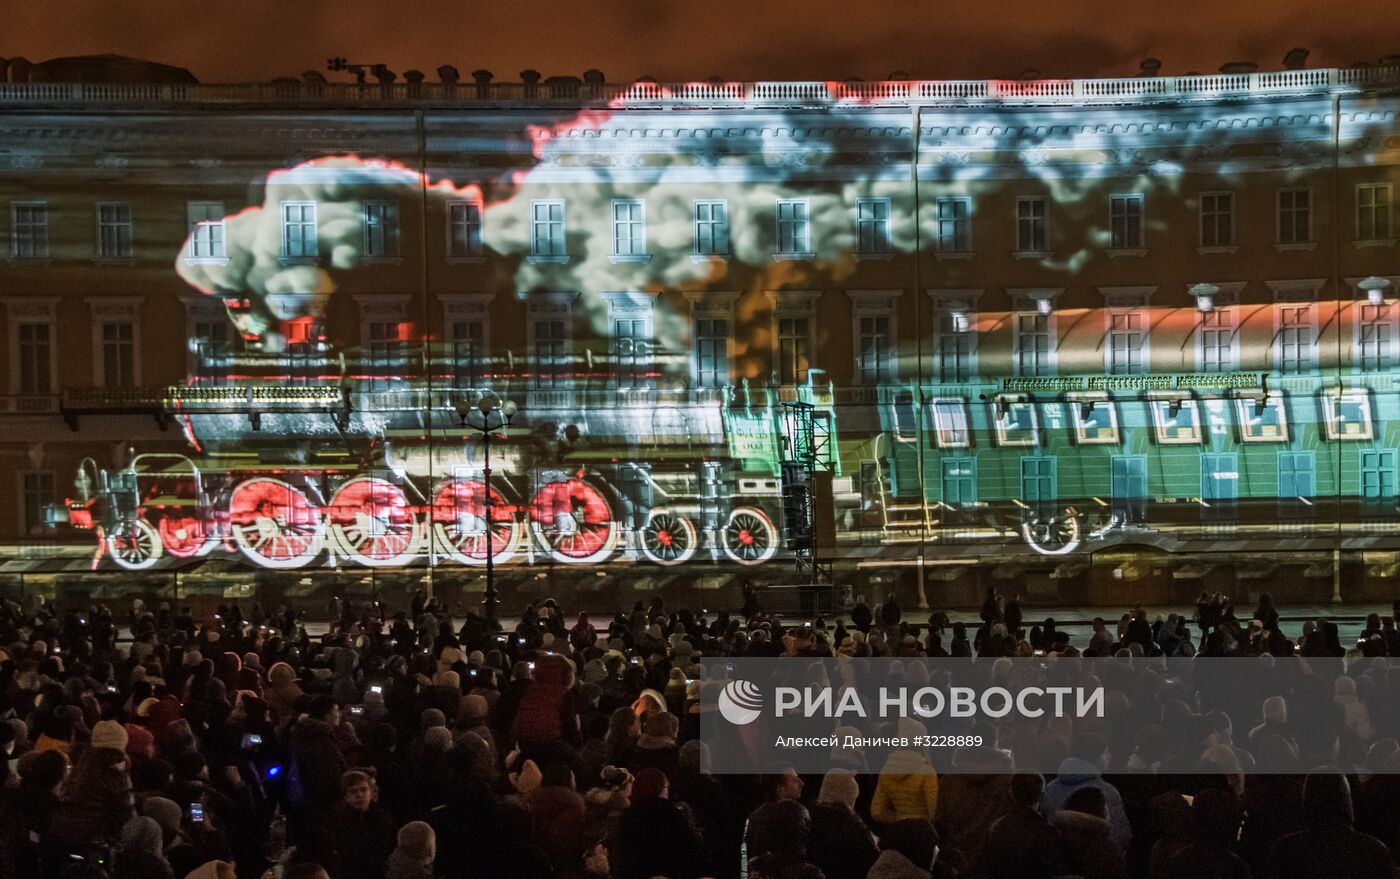 Световое шоу на Дворцовой площади в Санкт-Петербурге